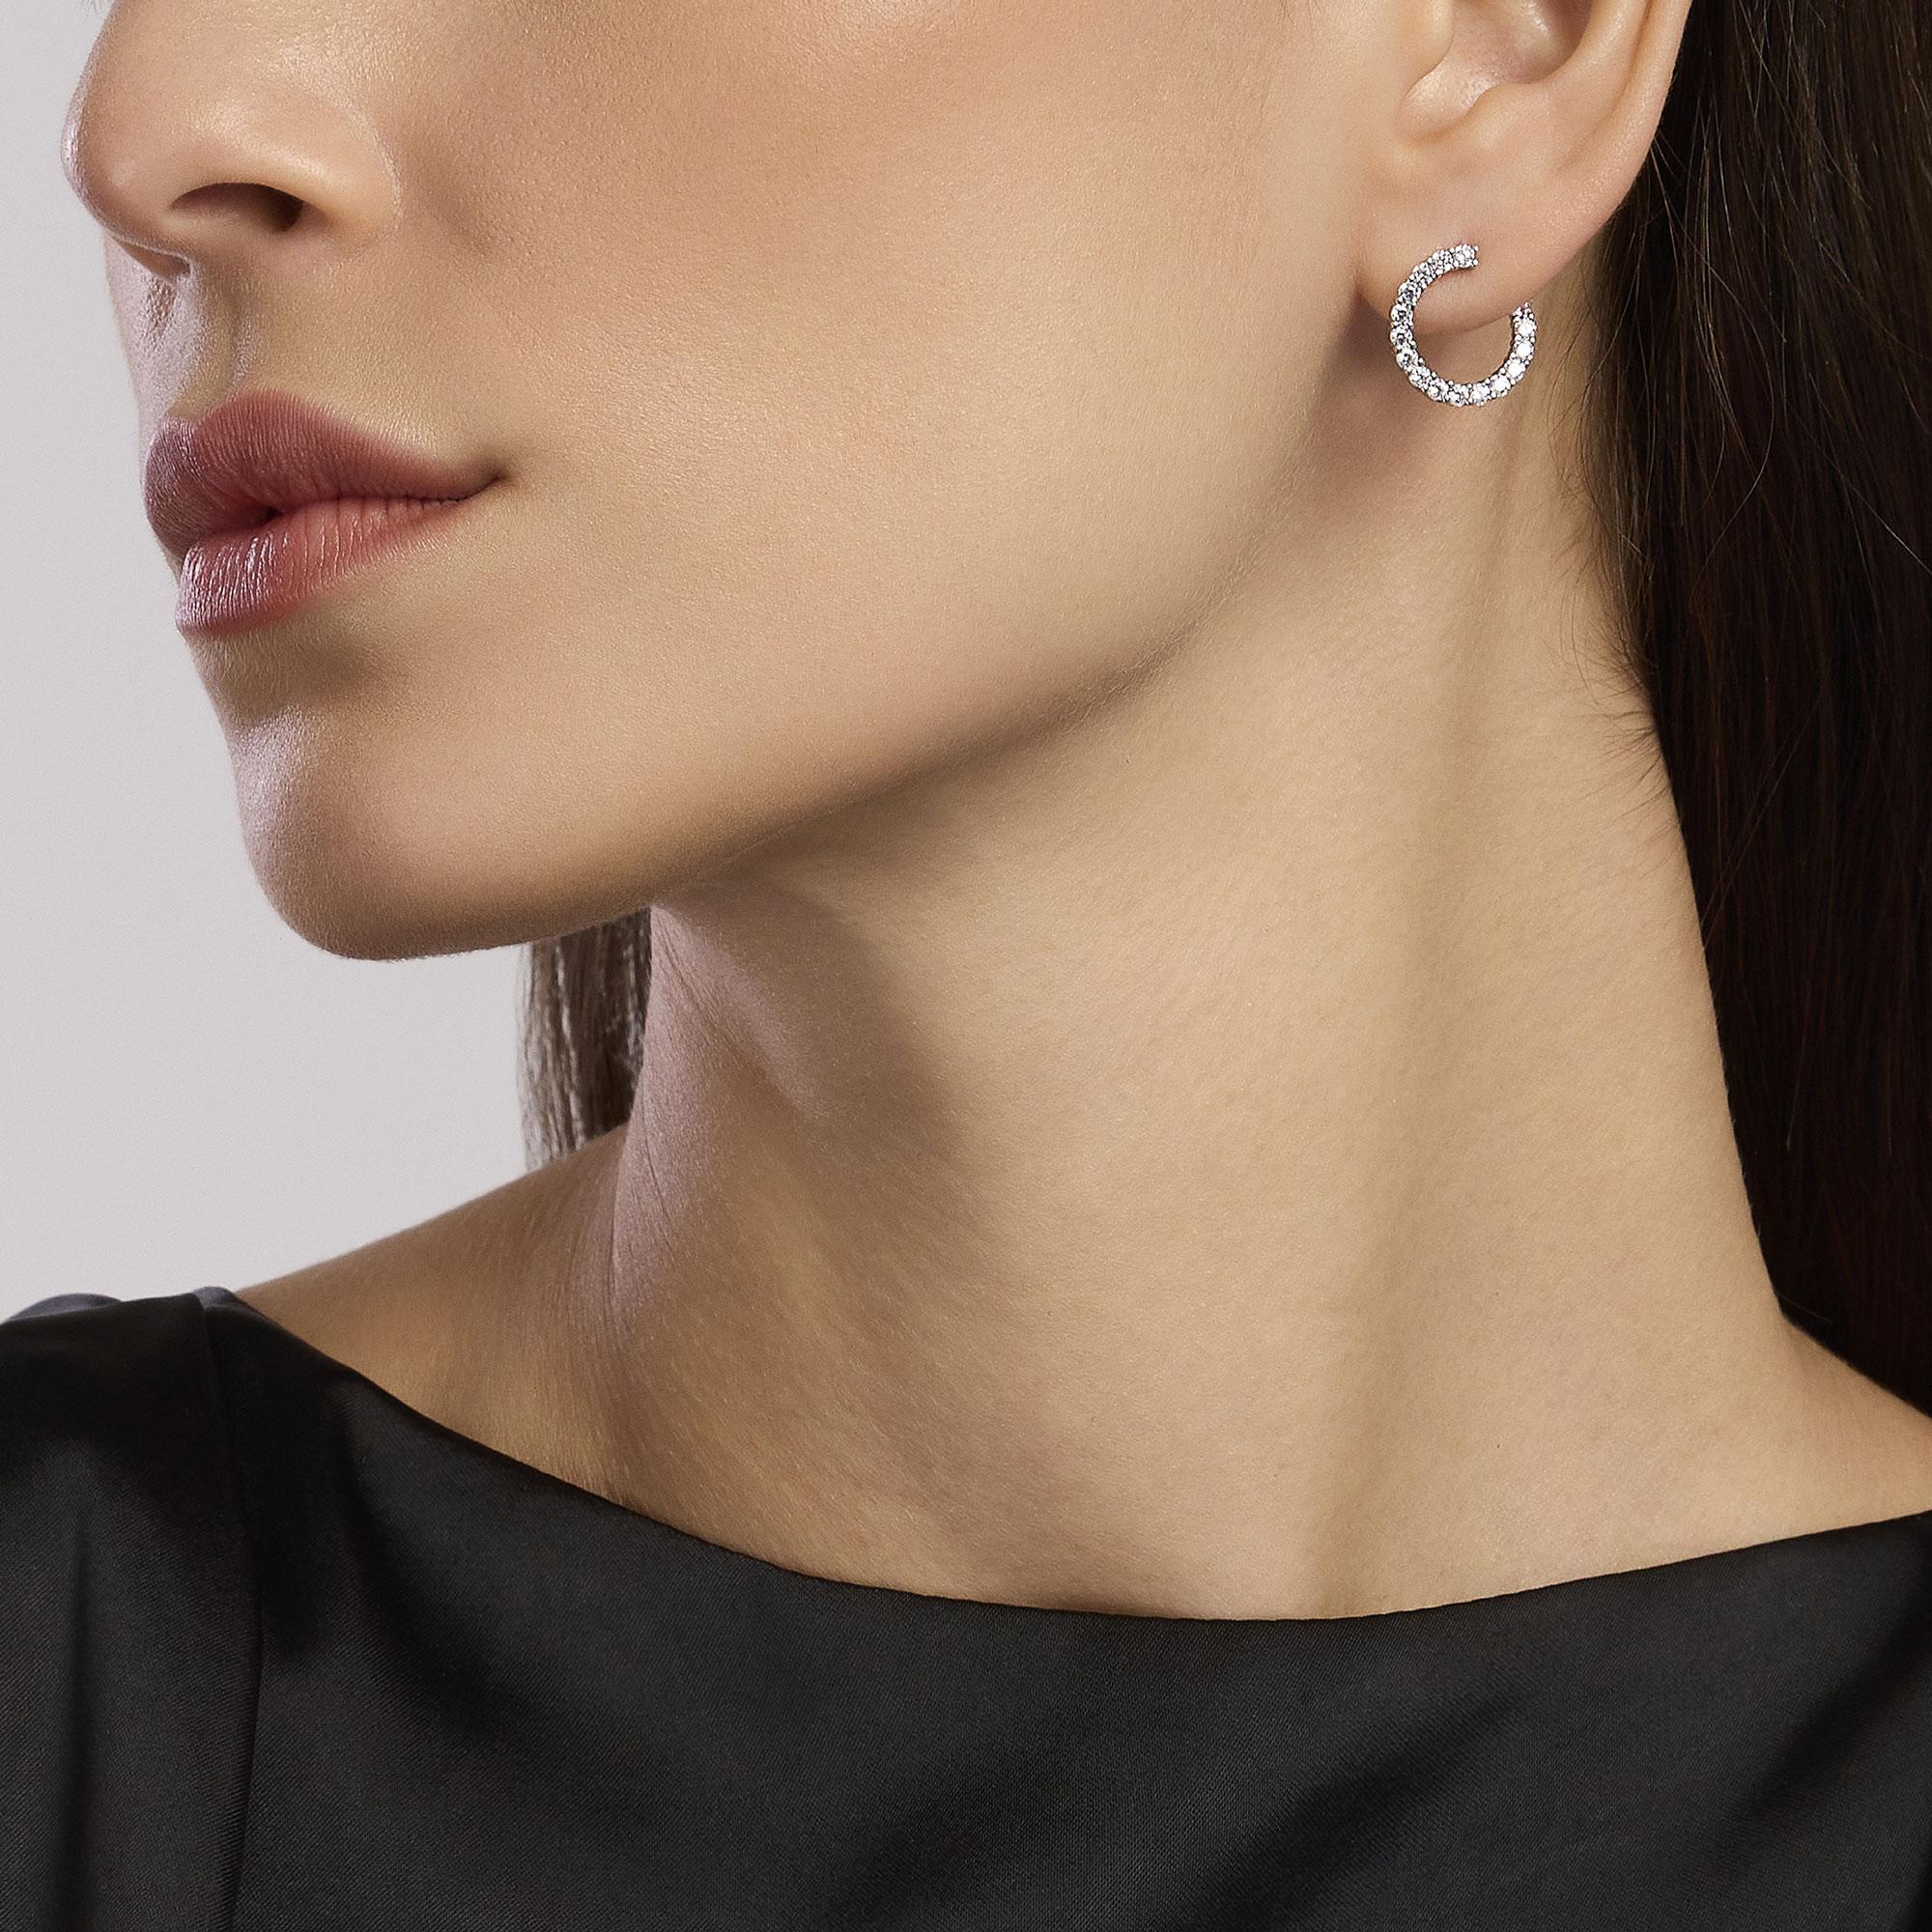 Mabina Femme - Boucles d'oreilles FUTURISTES en argent avec zircons - 563755